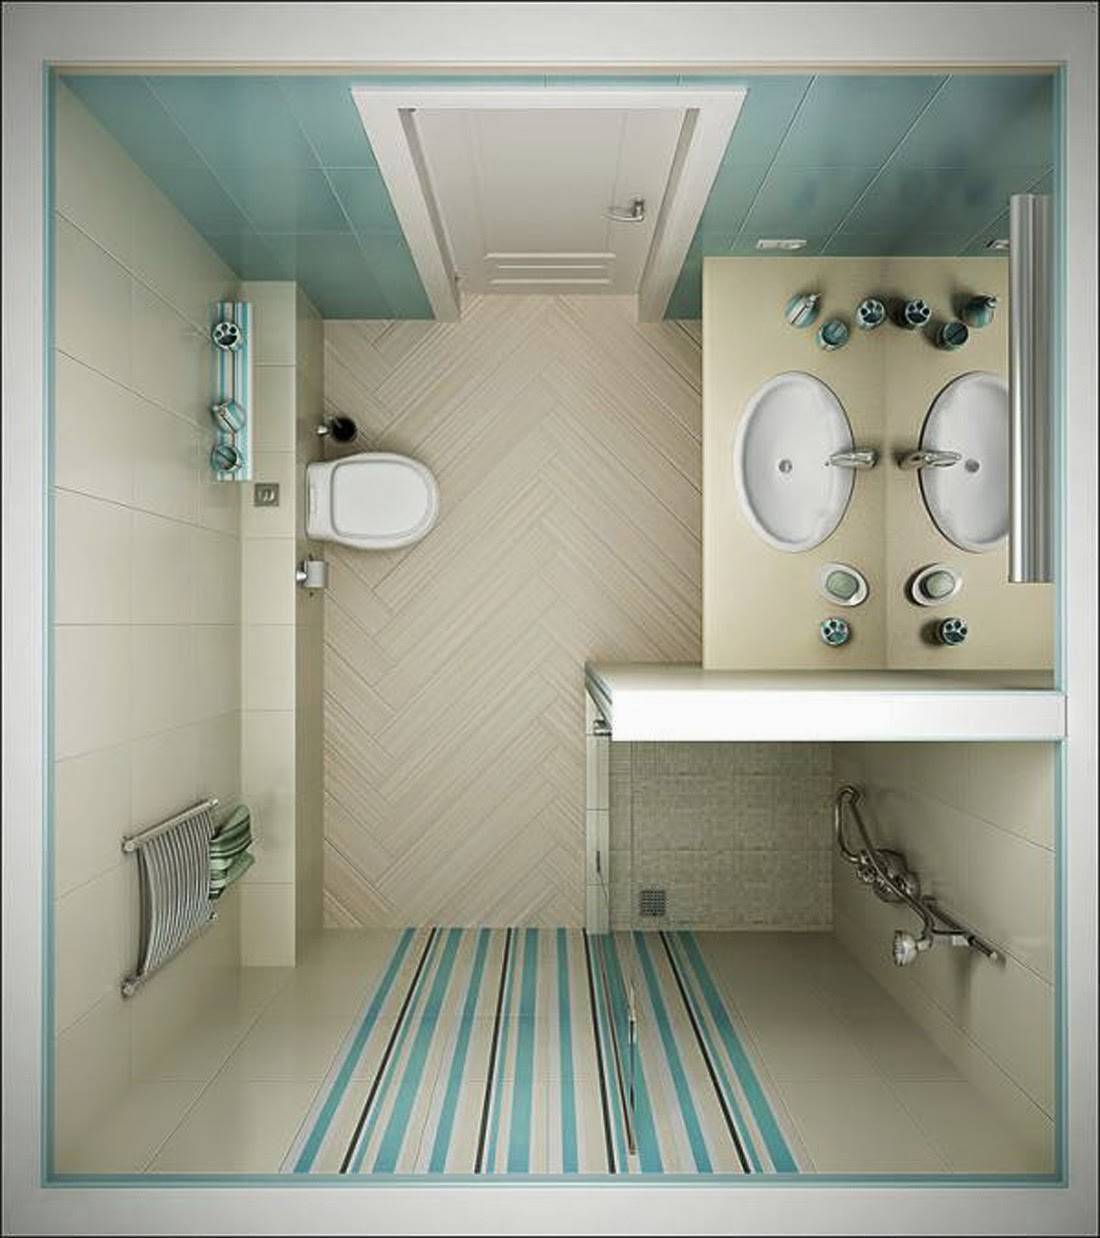 Дизайн ванной комнаты 8 кв м (фото) – идеи интерьера и планировка